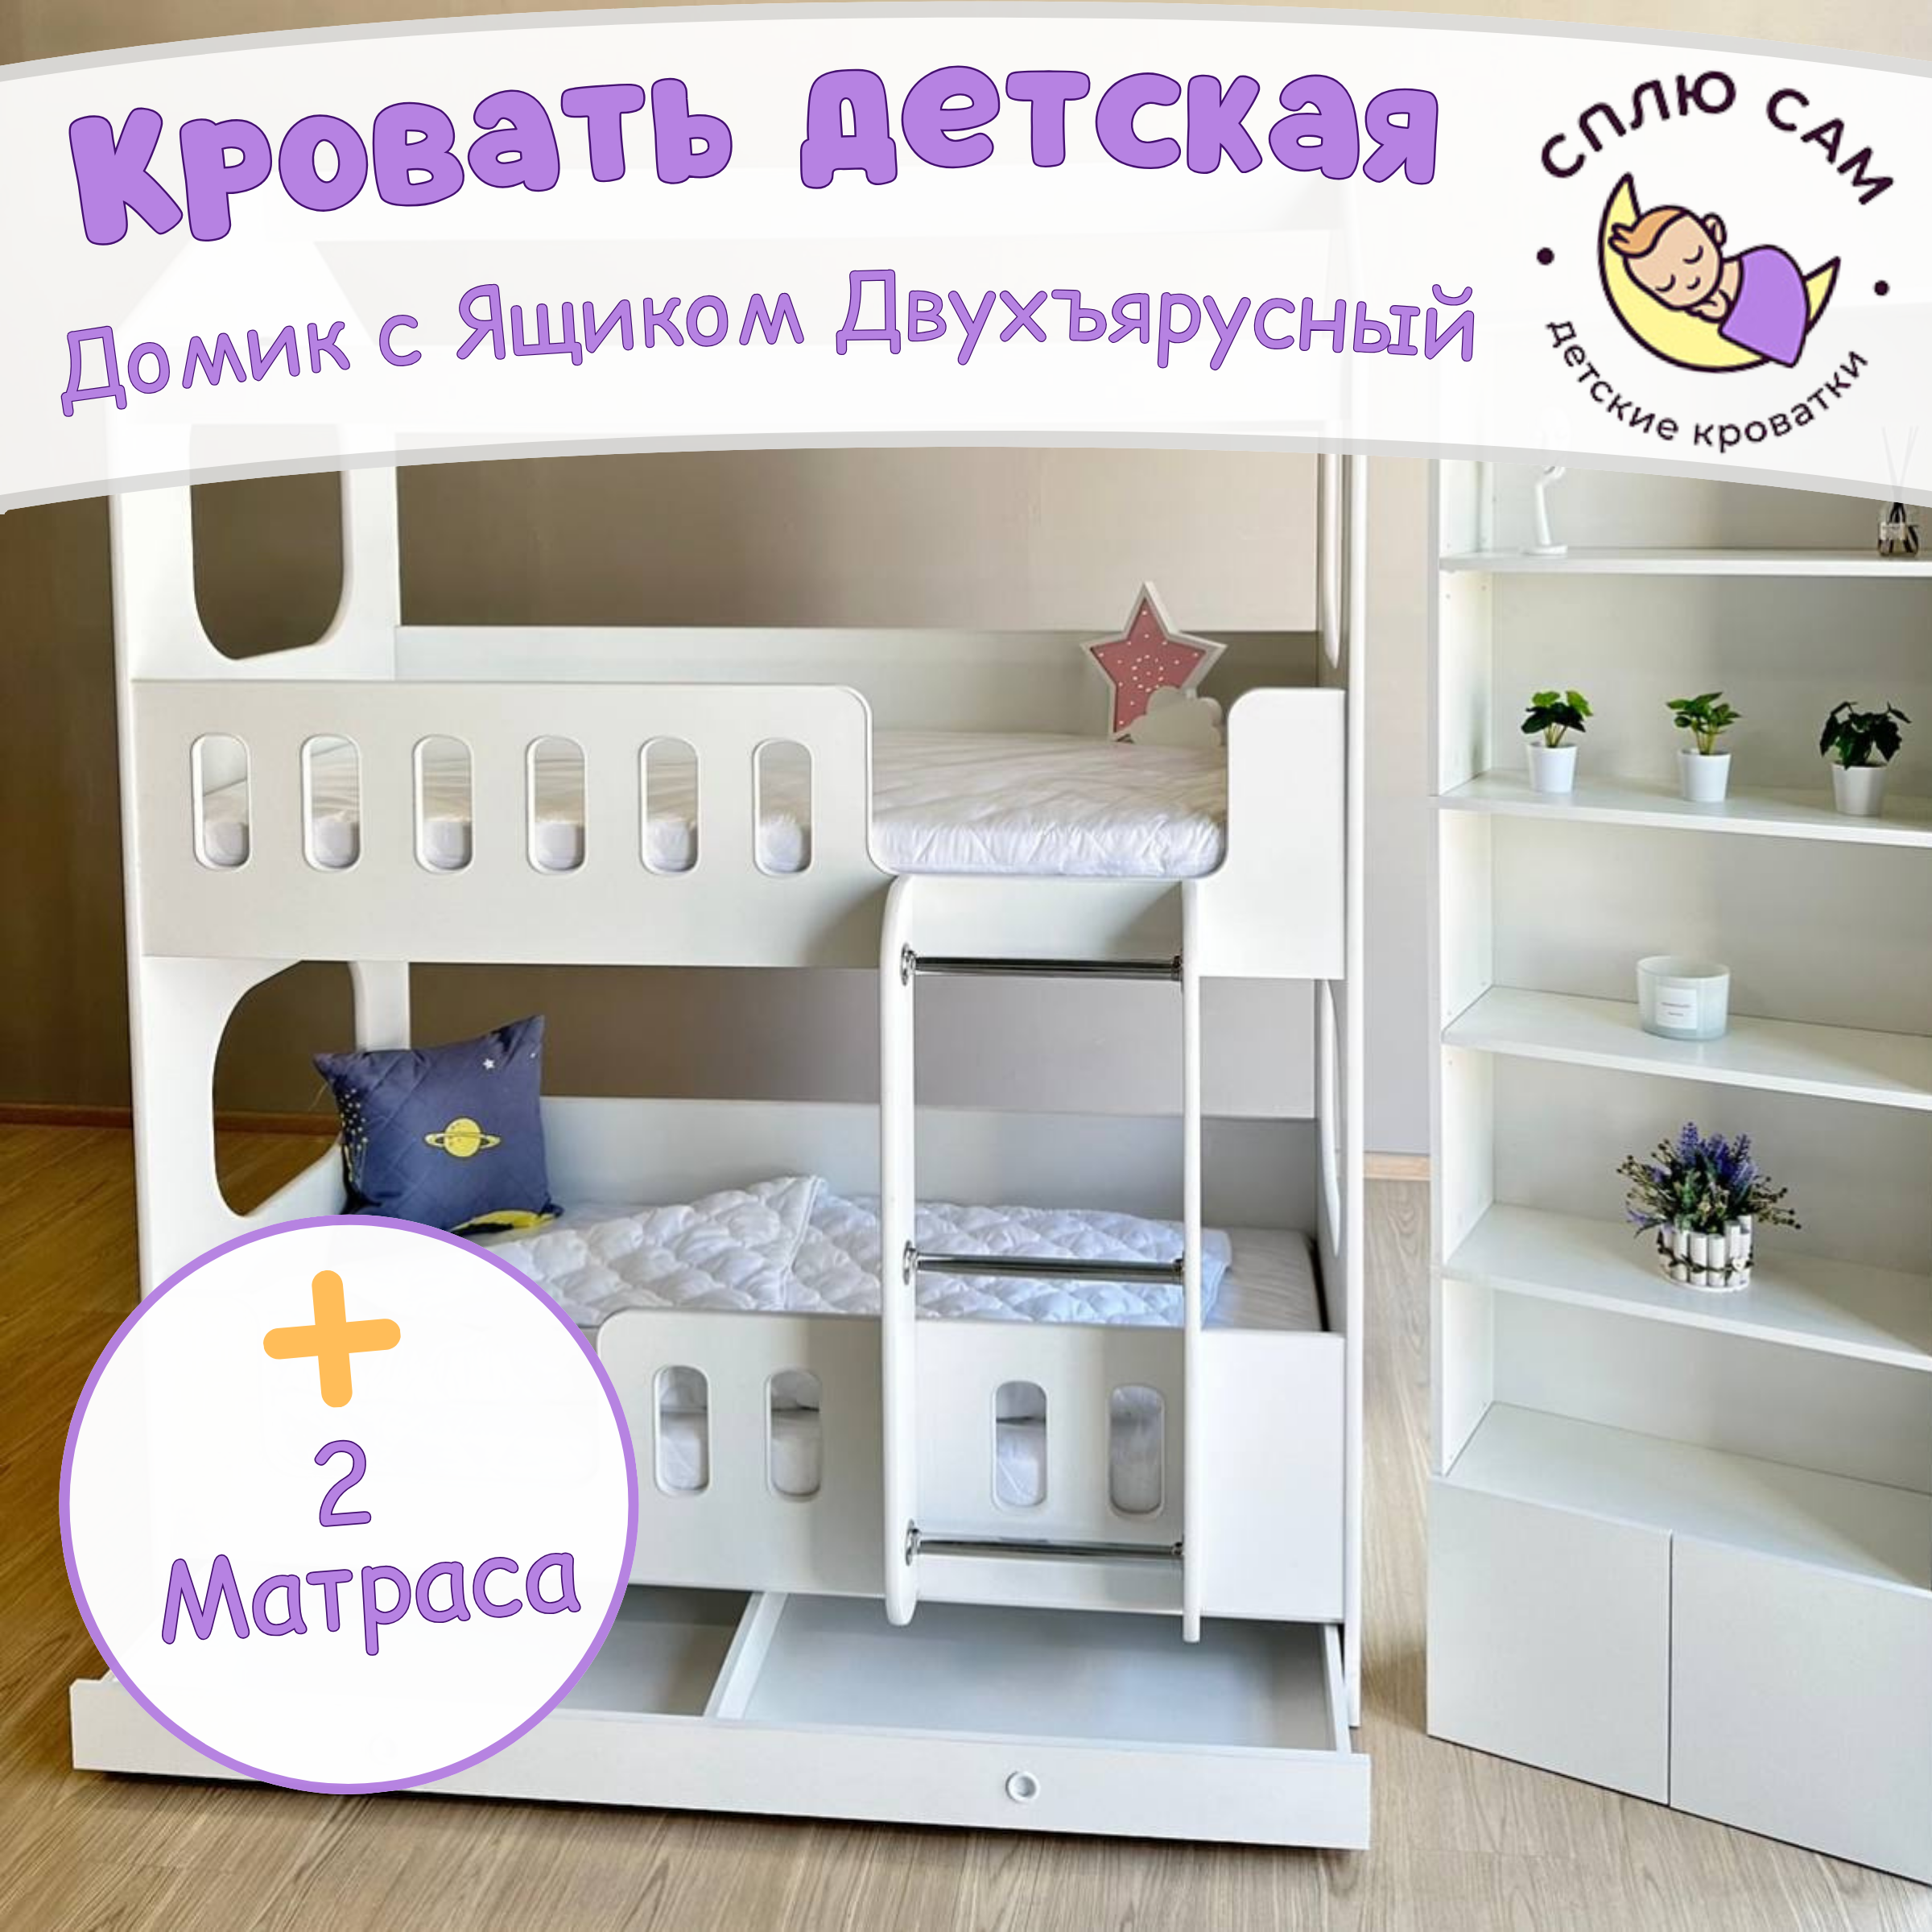 Кровать детская Сплю Сам Домик двухъярусный с ящиком, двумя матрасами, белый, 160х80 см